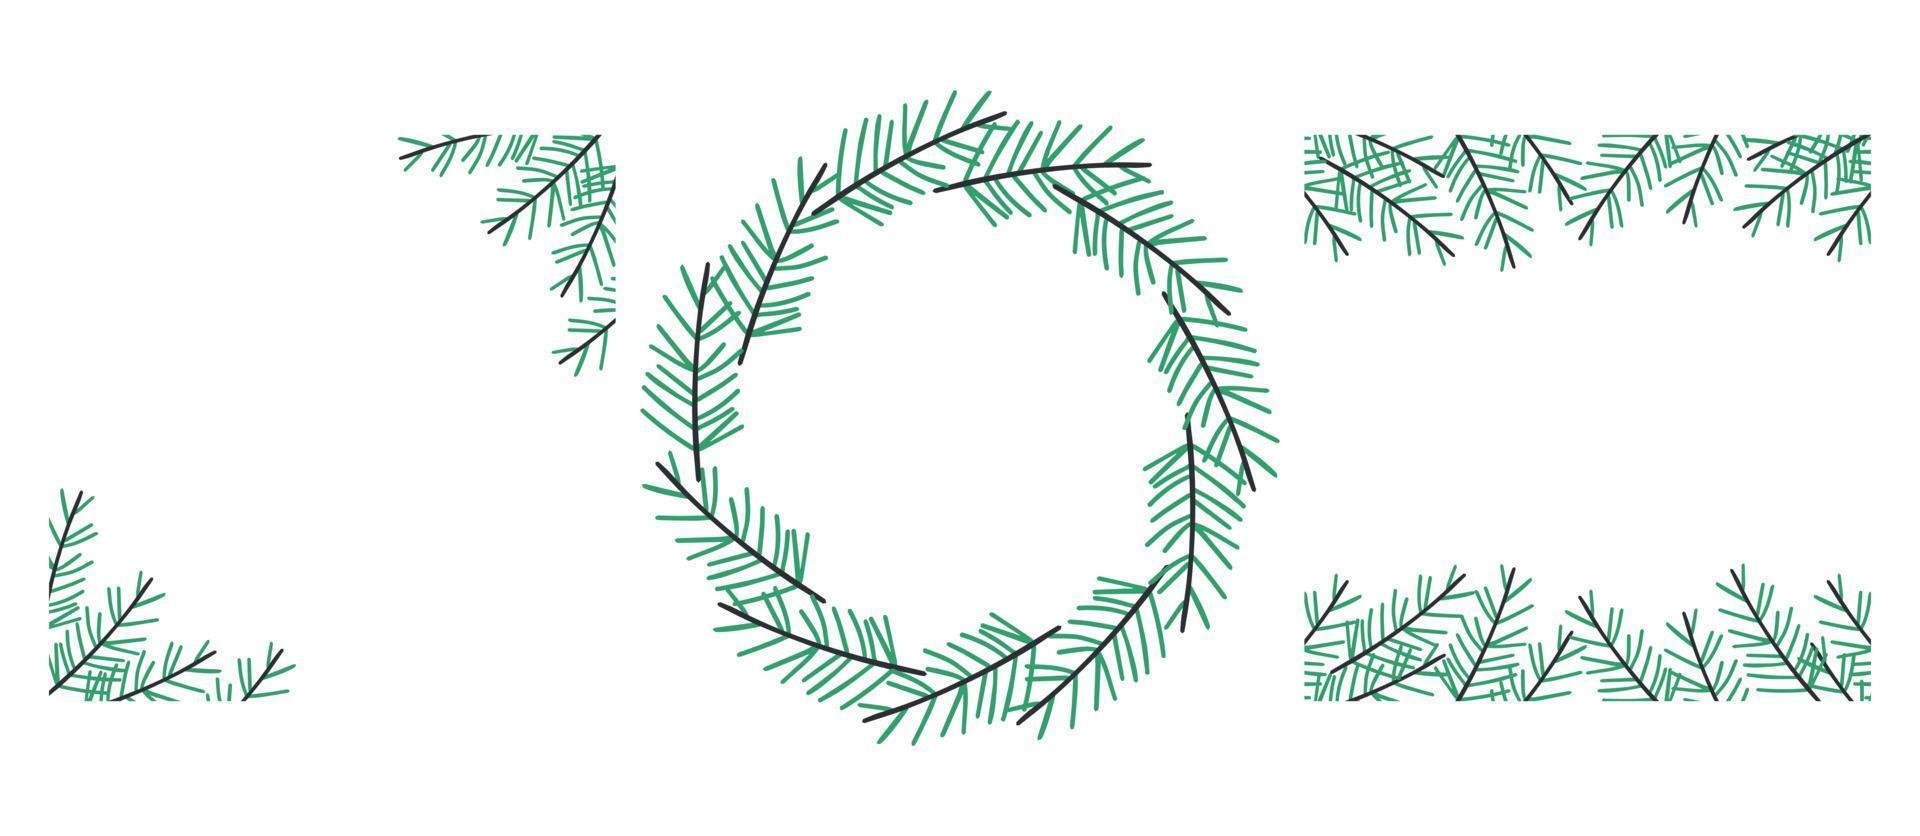 colección de marcos de ramas de abeto de invierno. ilustración de corona de invierno con ramas de abeto verde sobre fondo blanco. vector